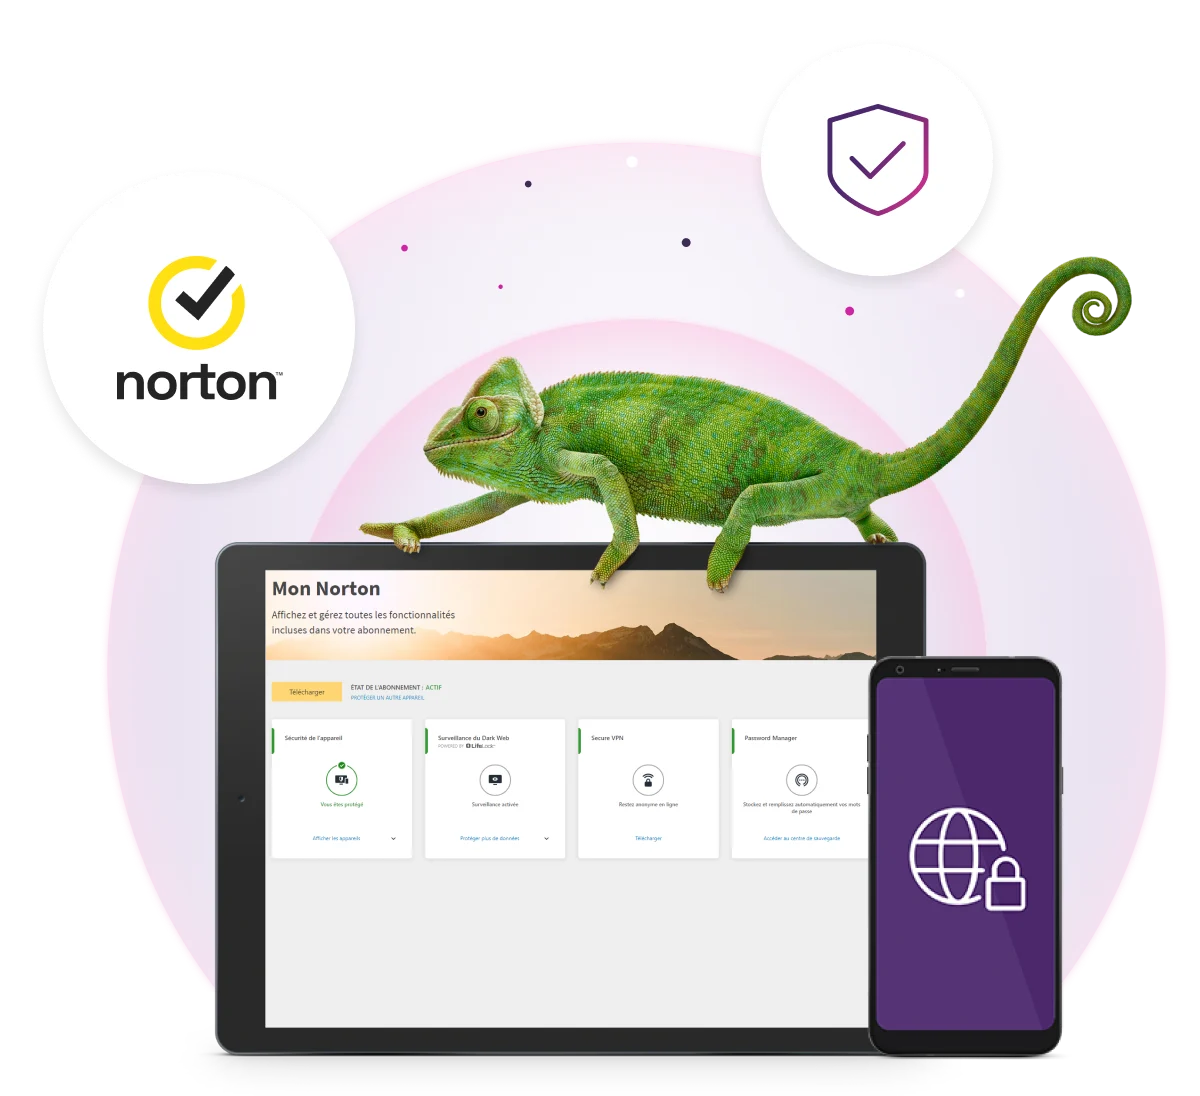 Un écran de tablette sur Protection numérique de TELUS affiche la protection de l’appareil, la Surveillance du Dark Web (Web clandestin), le RPV sécurisé (Secure VPN), le Gestionnaire de mots de passe et le logo Norton.